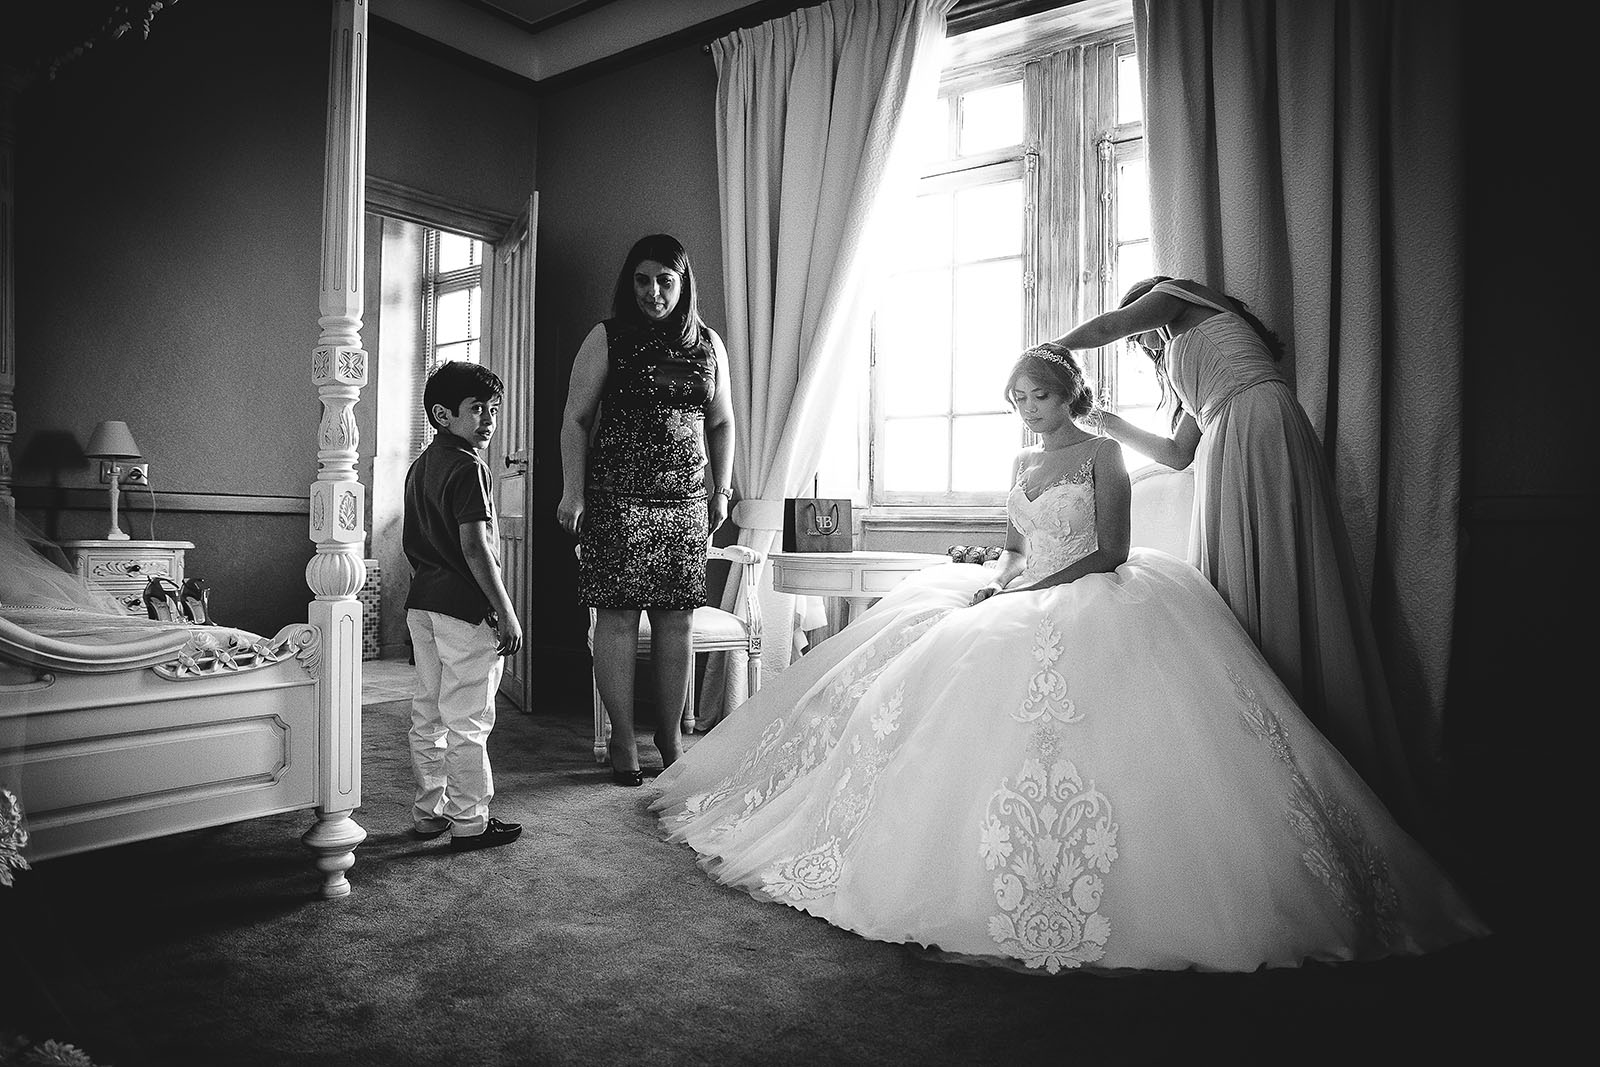 Mariage au Château de Beguin David Pommier photographe de mariage. Princesse magnifique dans une robe sublime